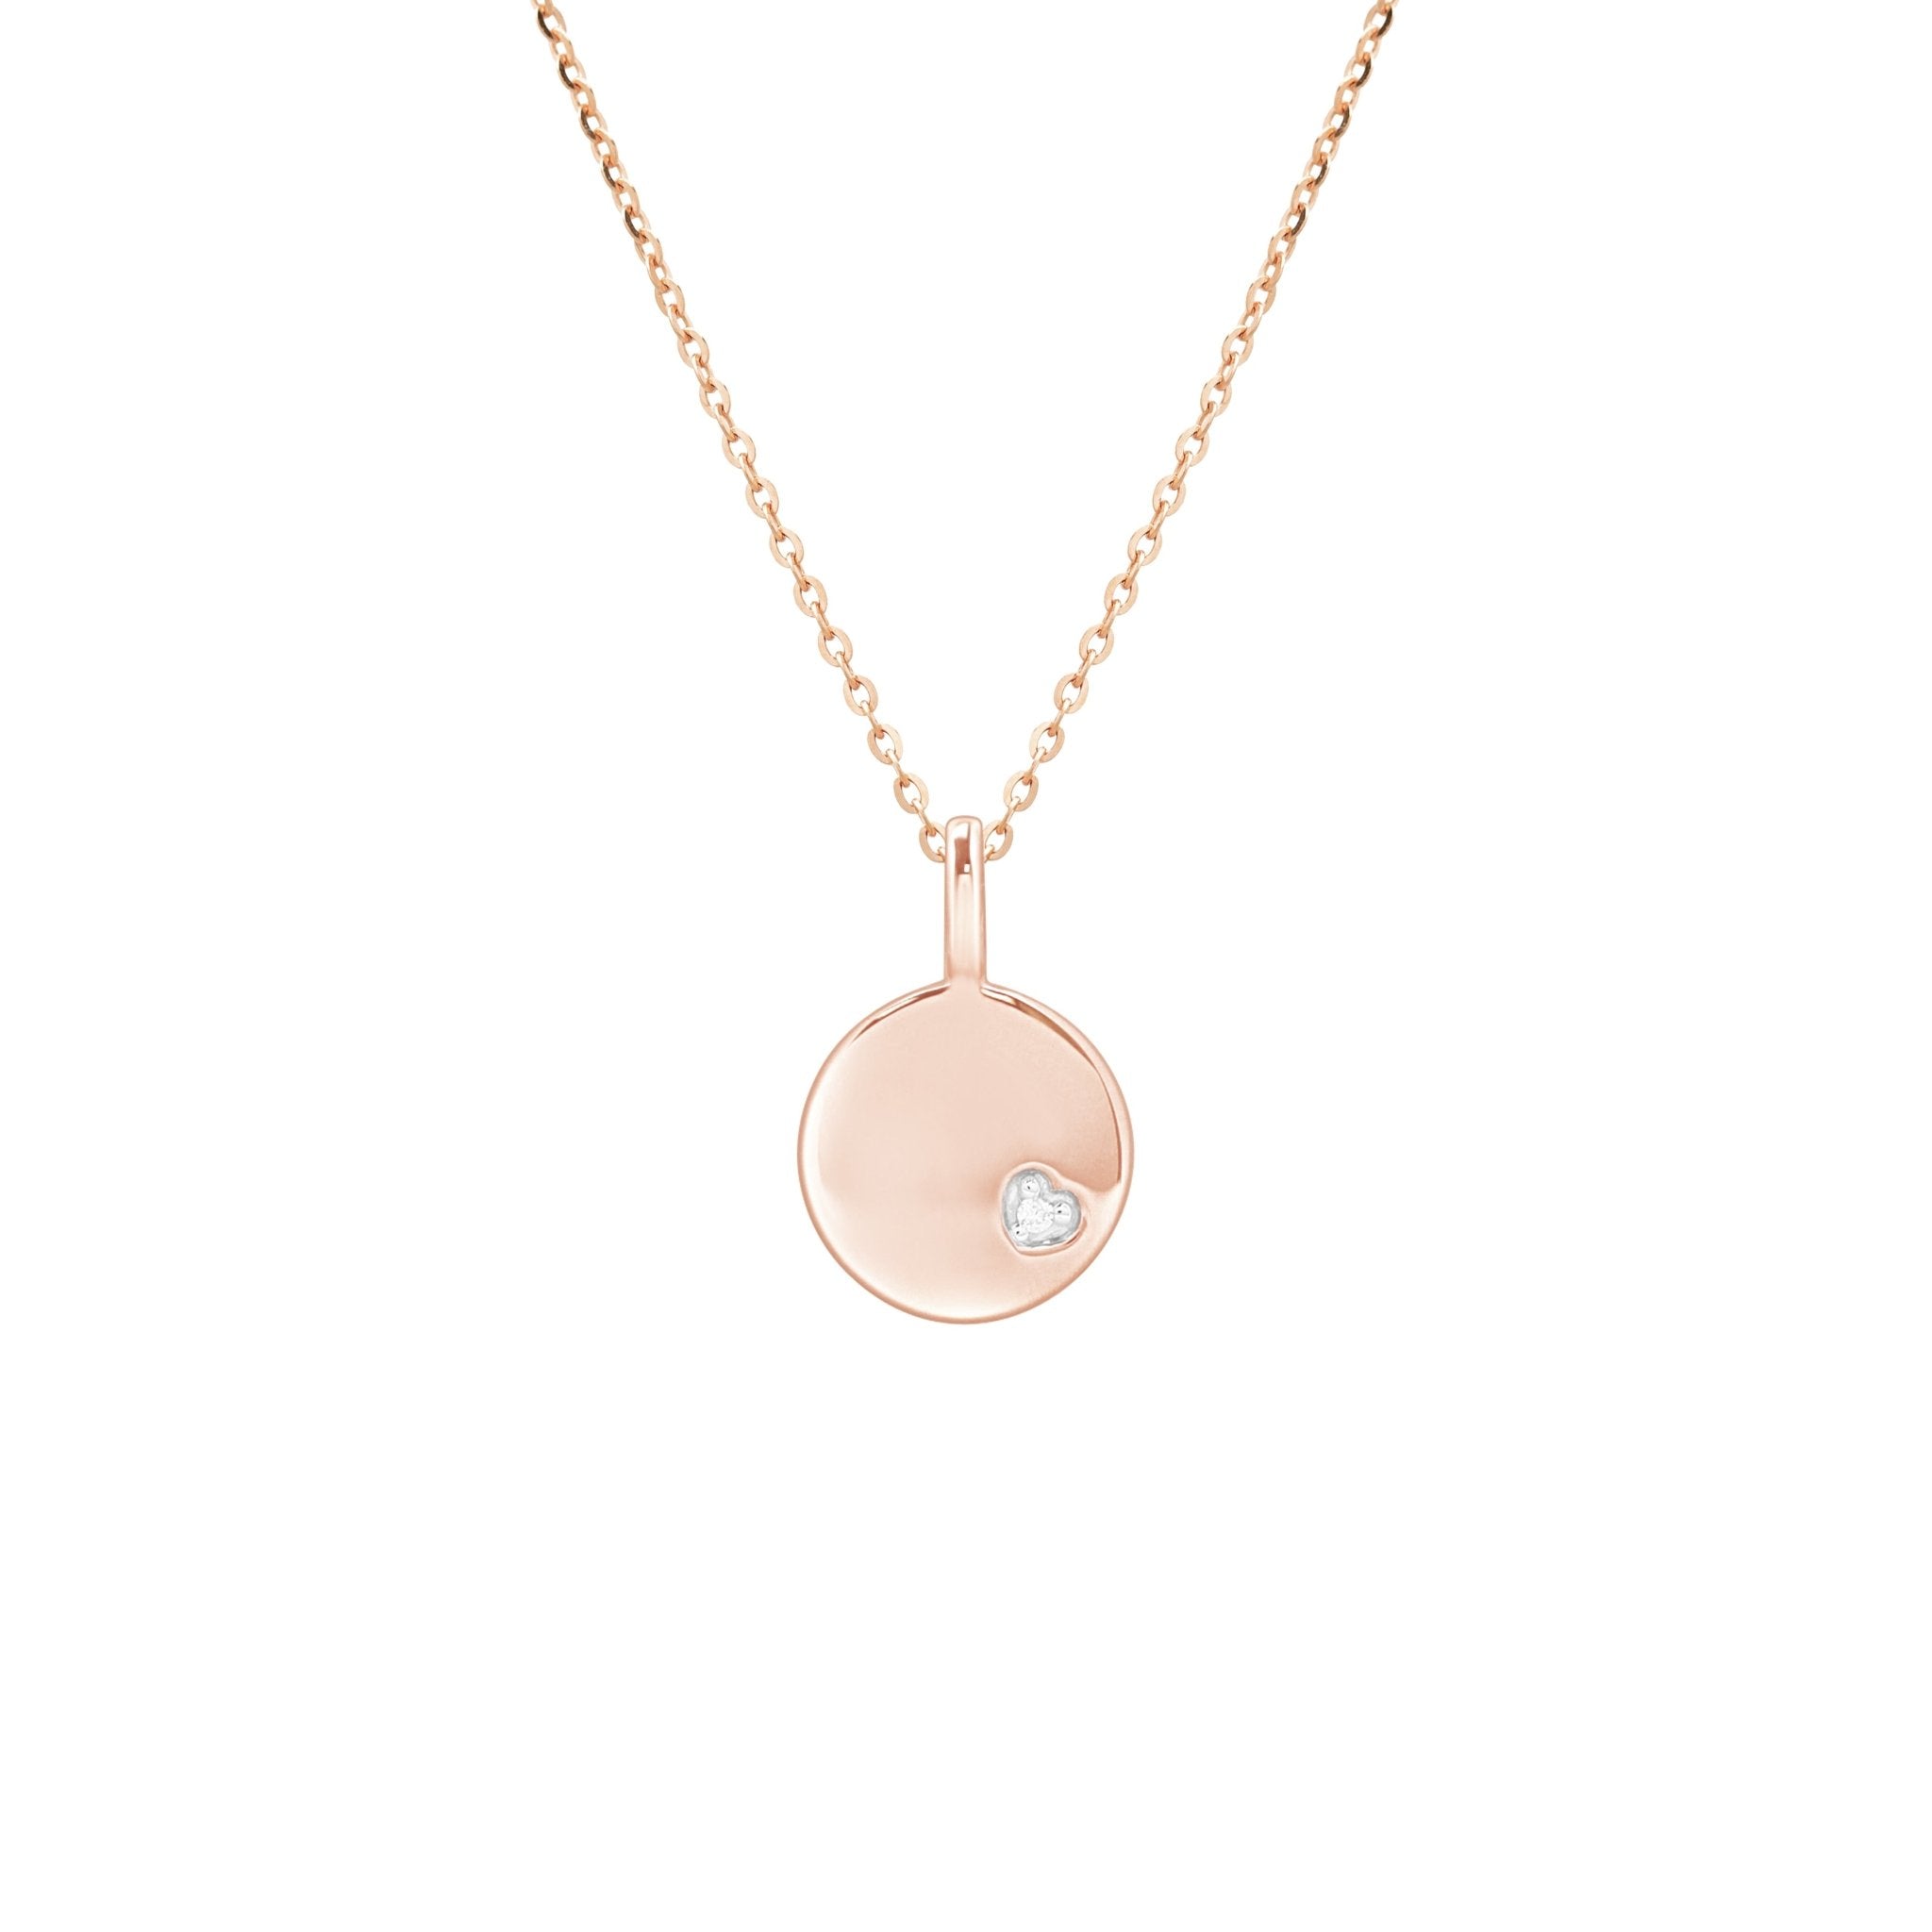 Diamond Heart Disc Pendant Necklace Necklaces Estella Collection #product_description# 17635 14k April Birthstone Birthstone #tag4# #tag5# #tag6# #tag7# #tag8# #tag9# #tag10#